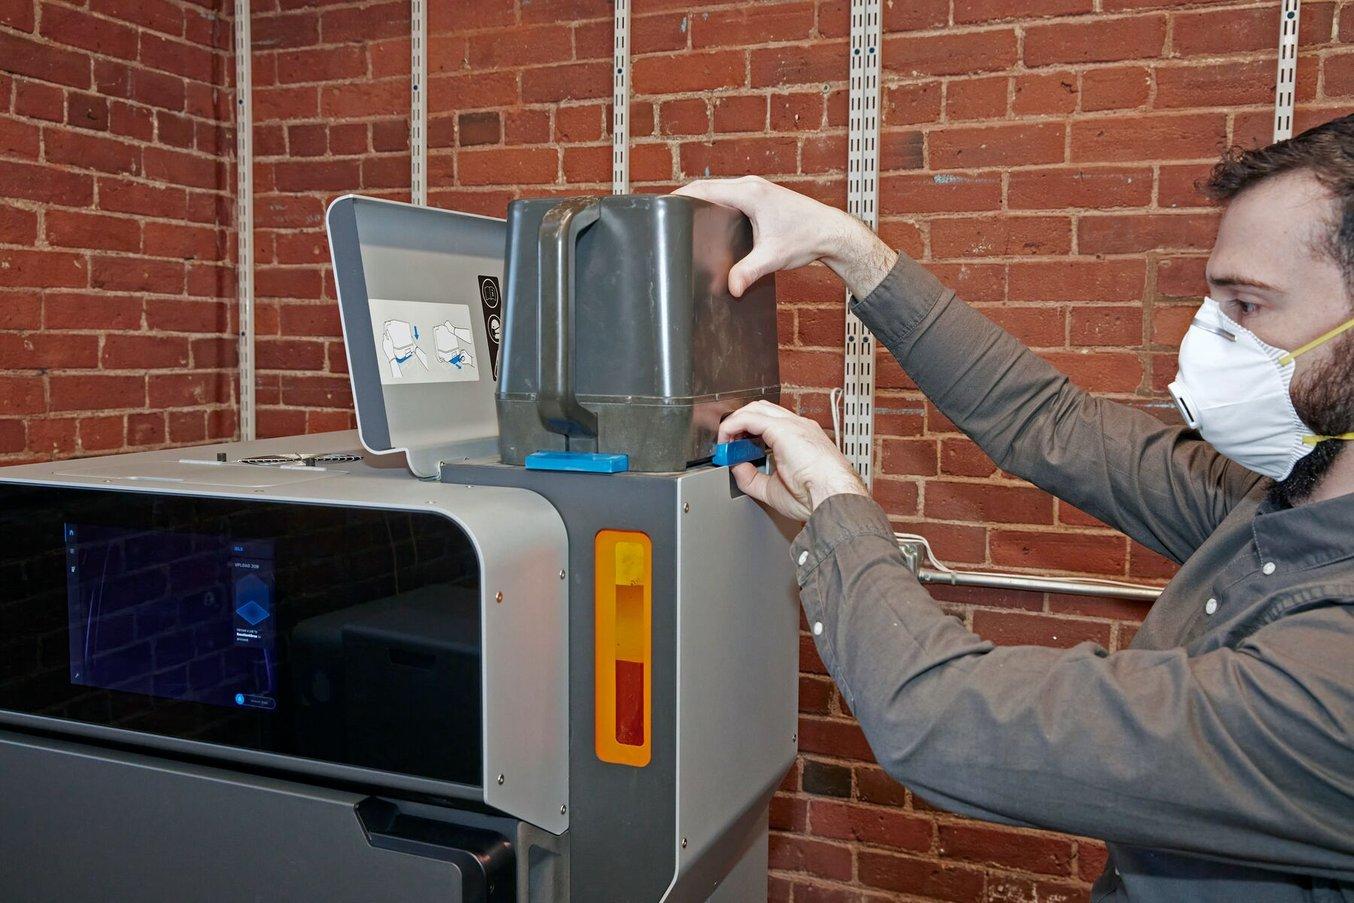 Le stampanti della serie Fuse permettono di caricare la polvere senza difficoltà con una cartuccia.